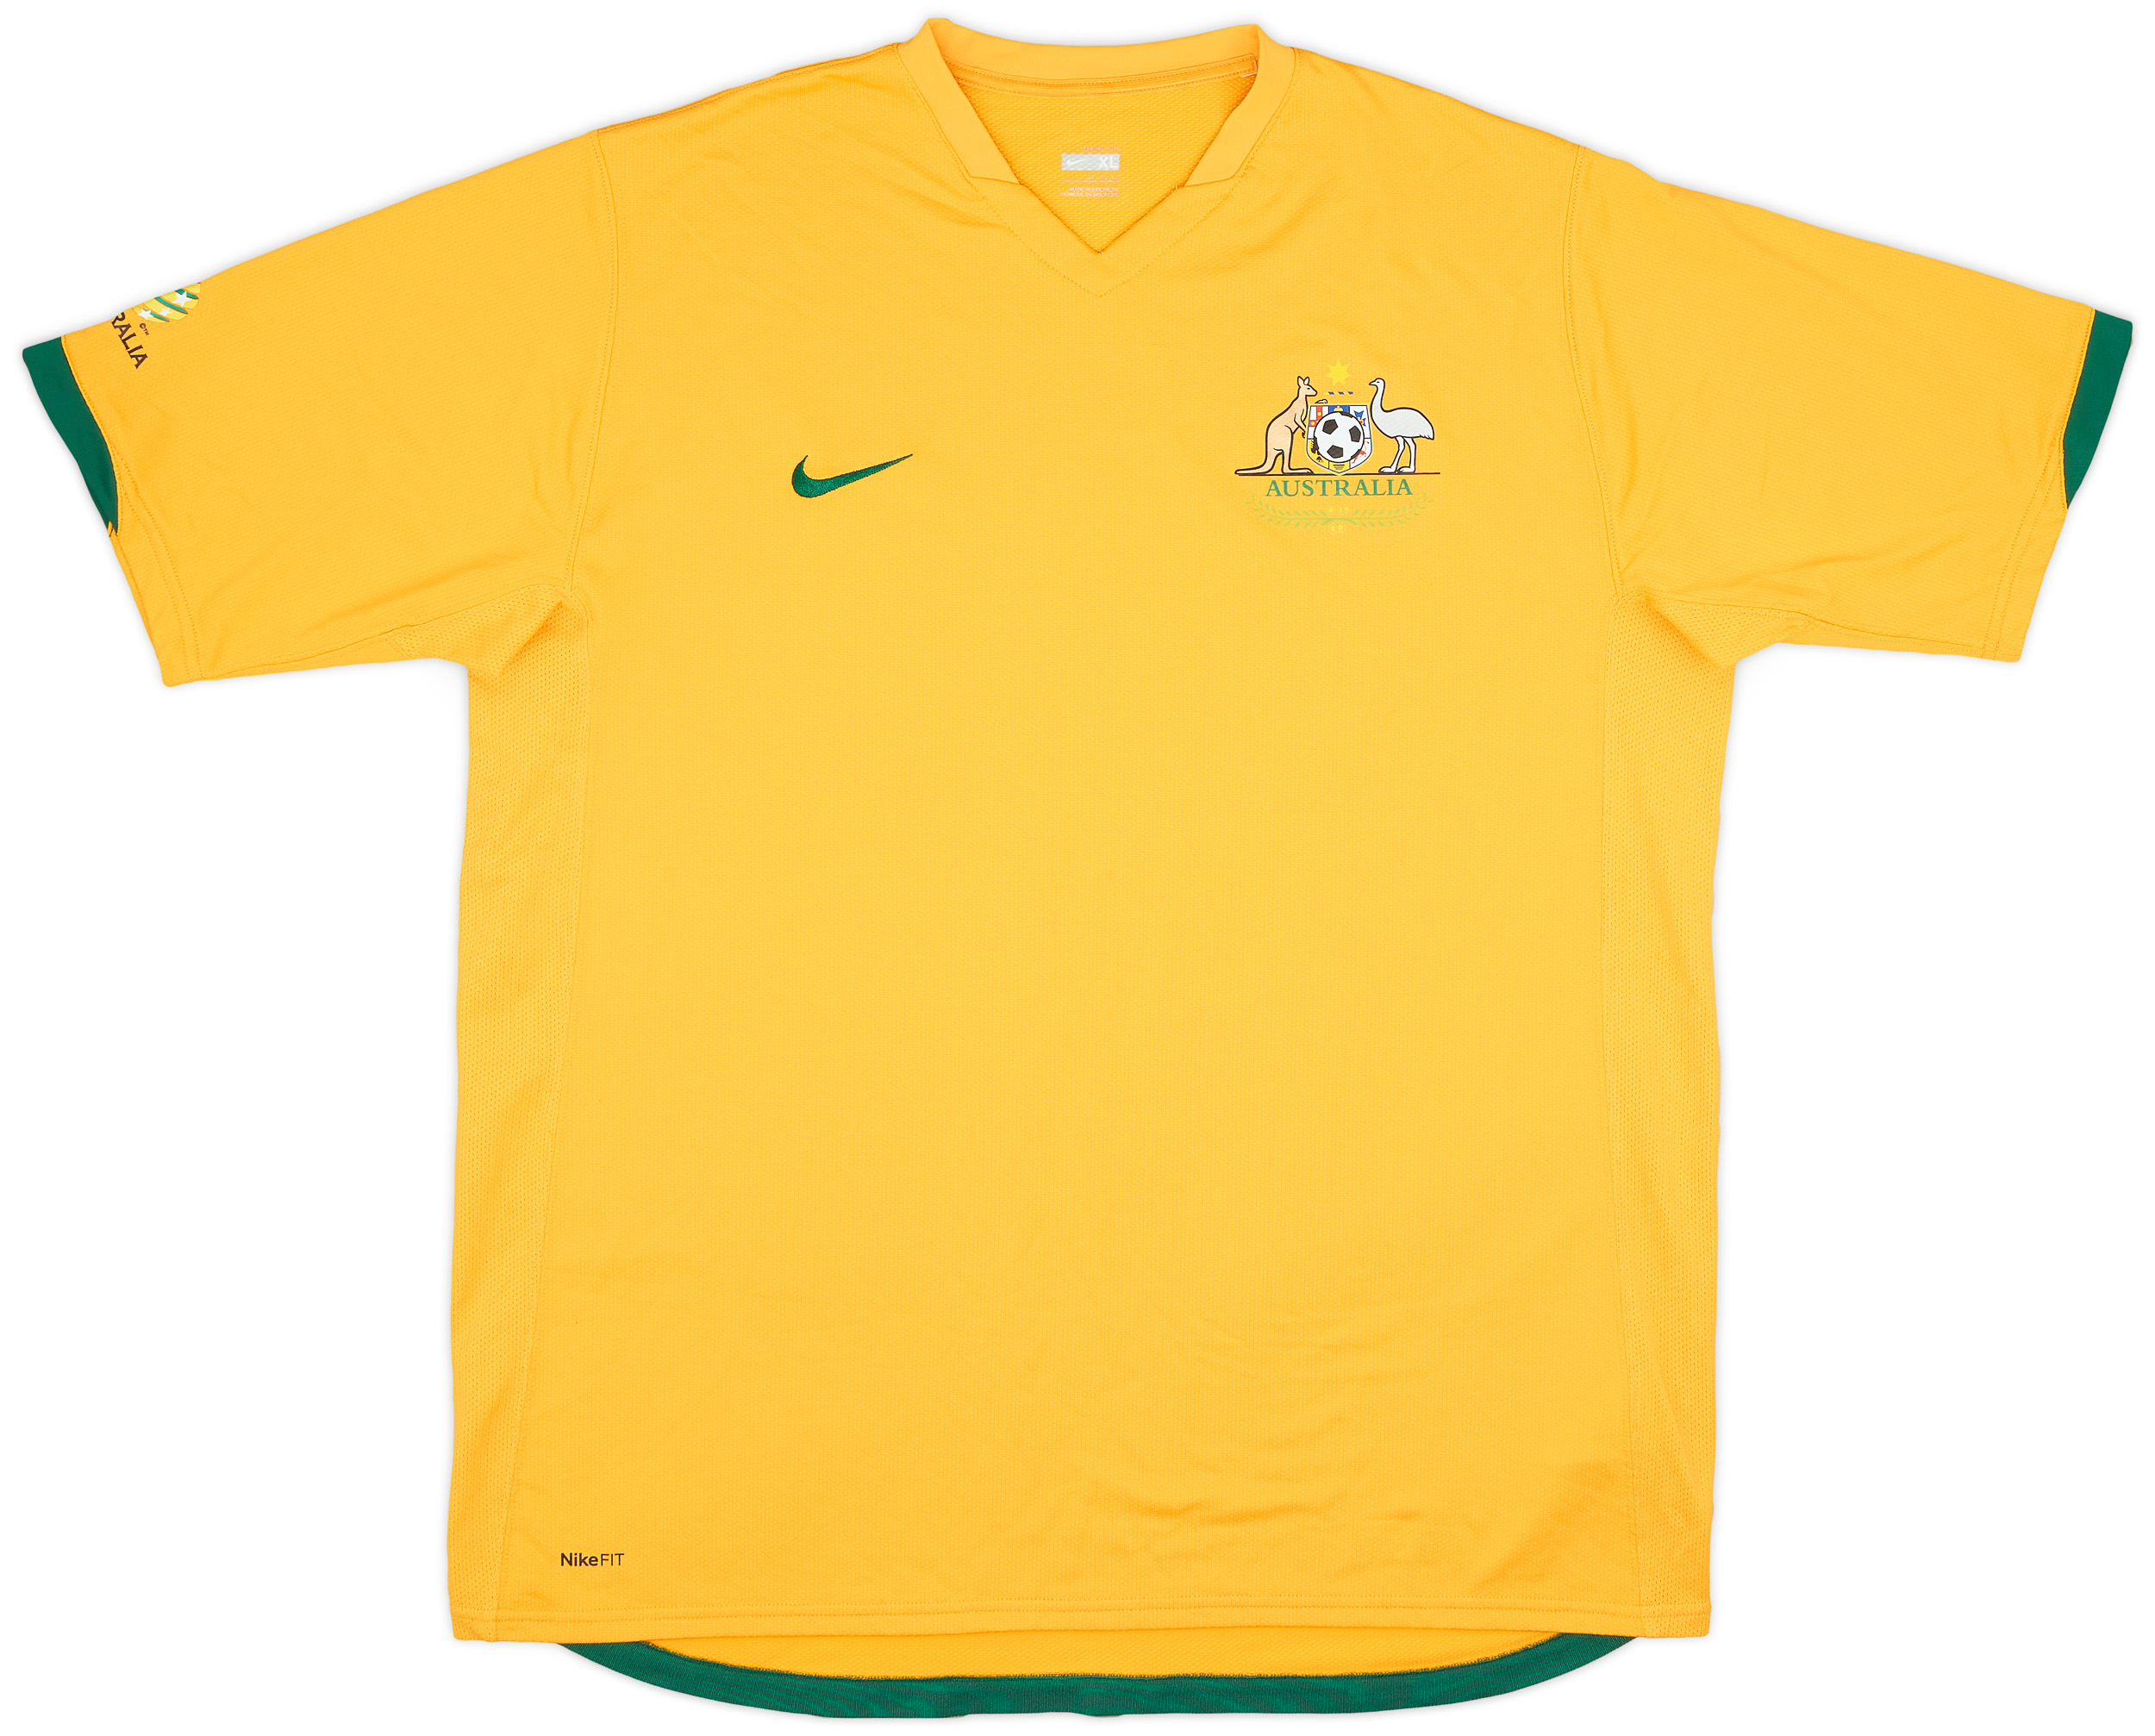 2006-08 Australia Home Shirt - 9/10 - ()